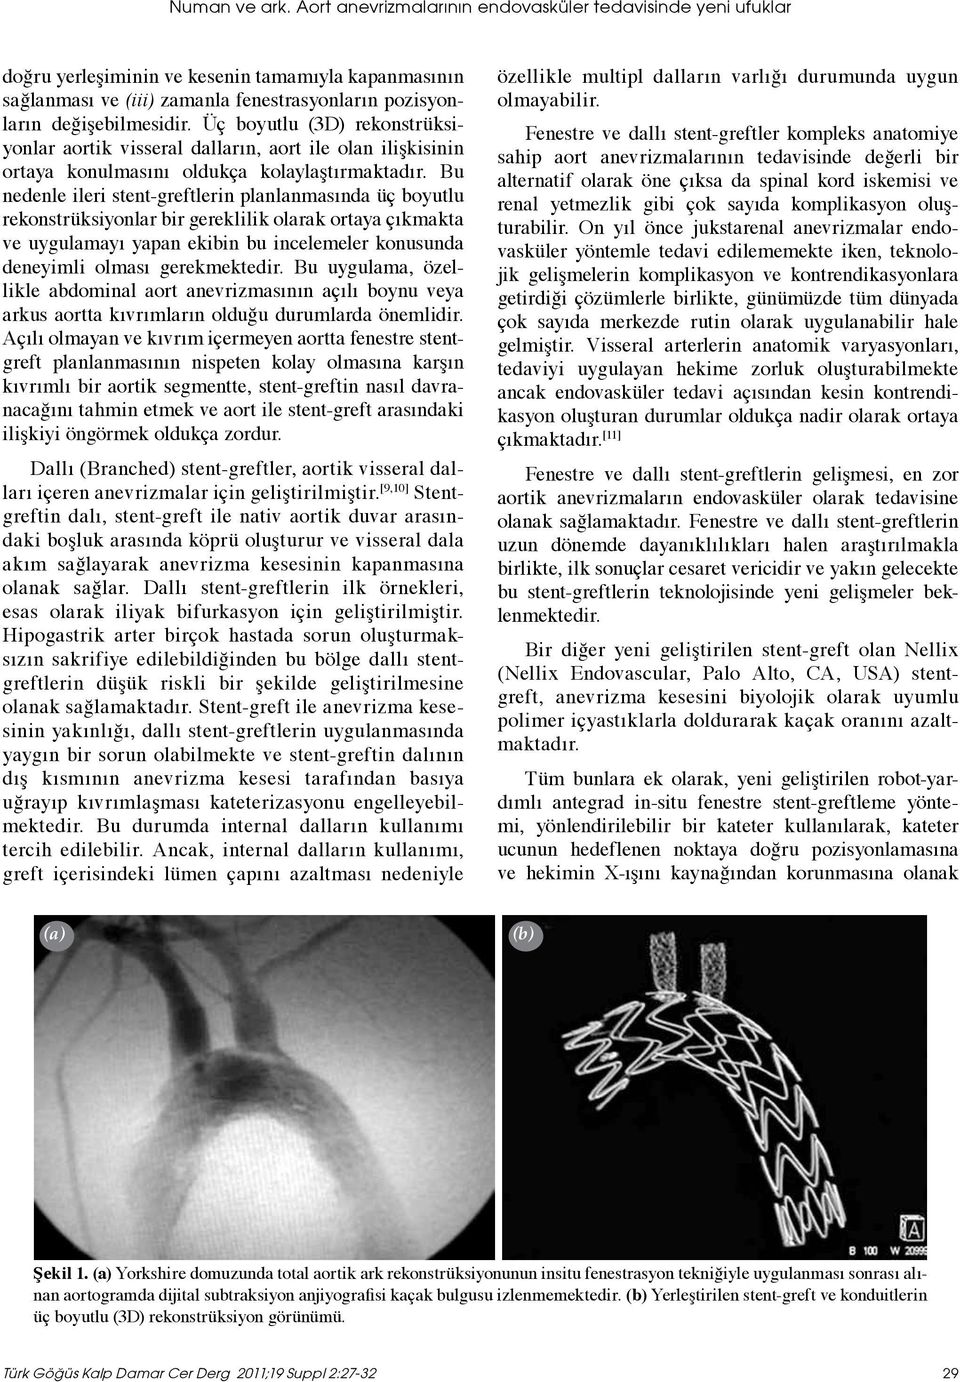 Üç boyutlu (3D) rekonstrüksiyonlar aortik visseral dalların, aort ile olan ilişkisinin ortaya konulmasını oldukça kolaylaştırmaktadır.